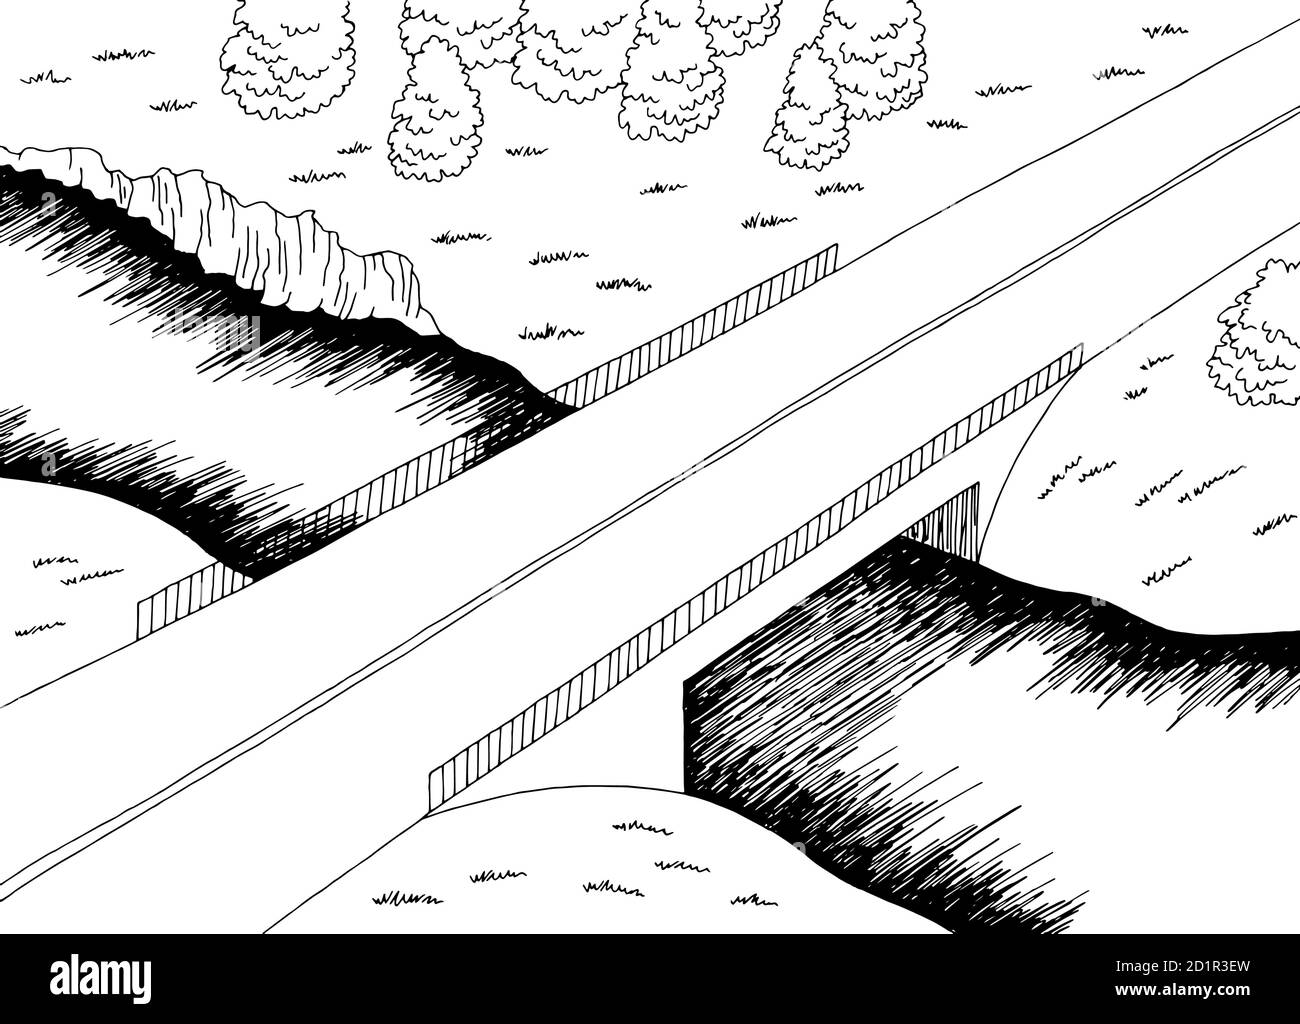 Pont route haut vue aérienne graphique noir blanc paysage rivière vecteur d'illustration d'esquisse Illustration de Vecteur